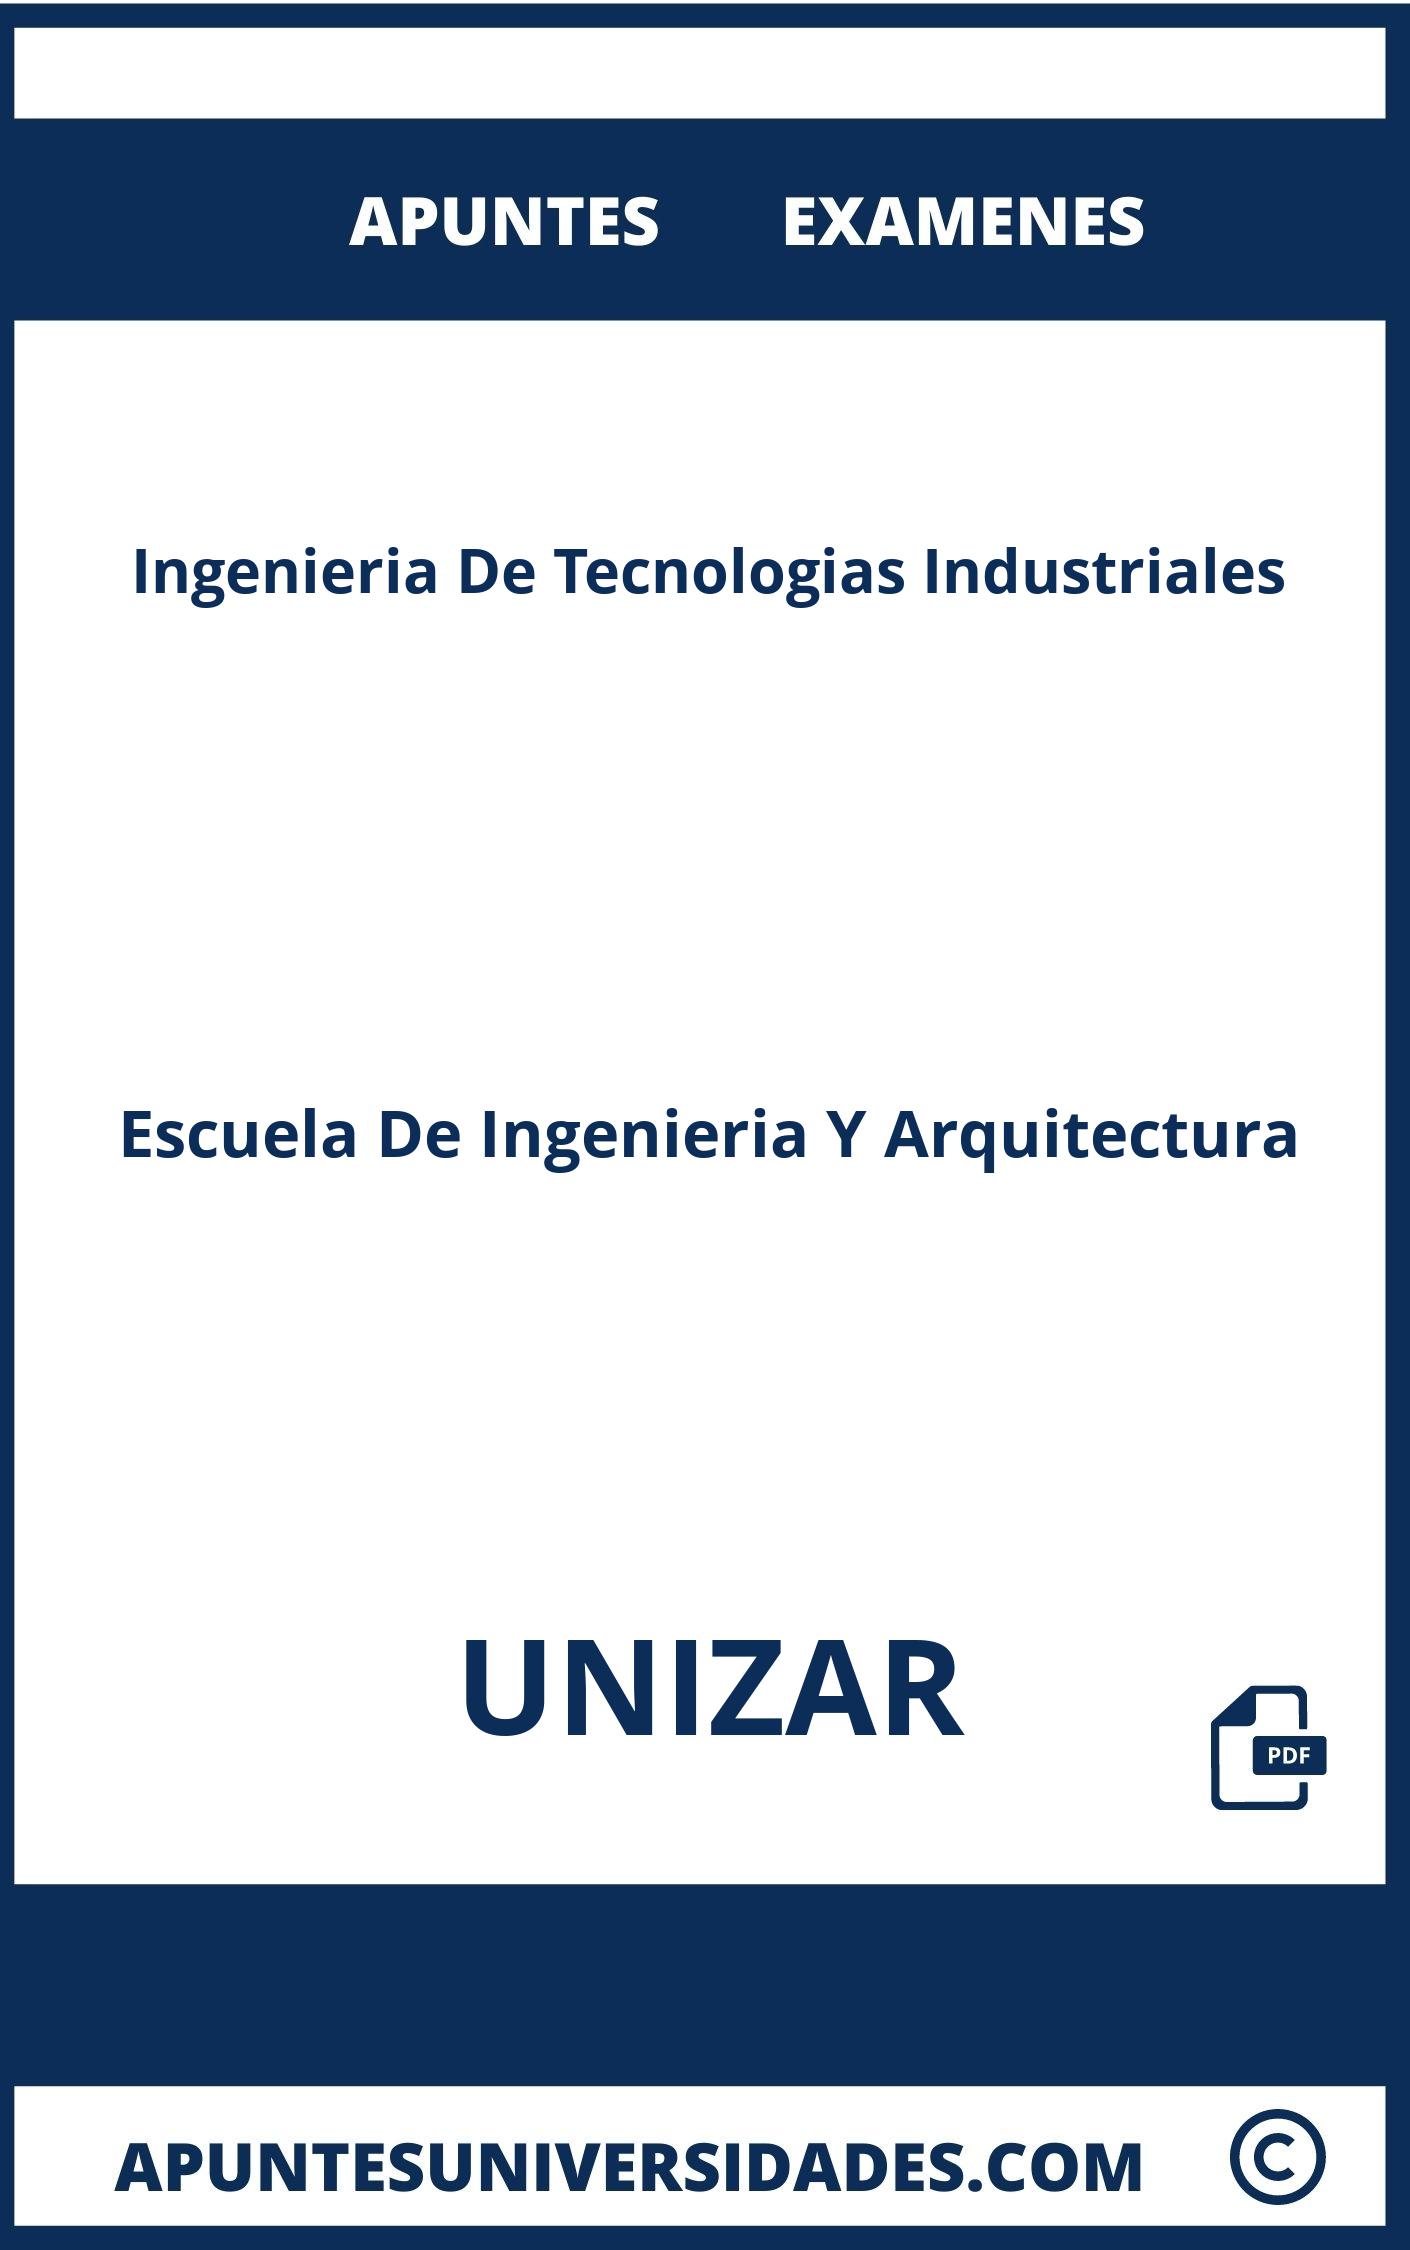 Apuntes Examenes Ingenieria De Tecnologias Industriales UNIZAR